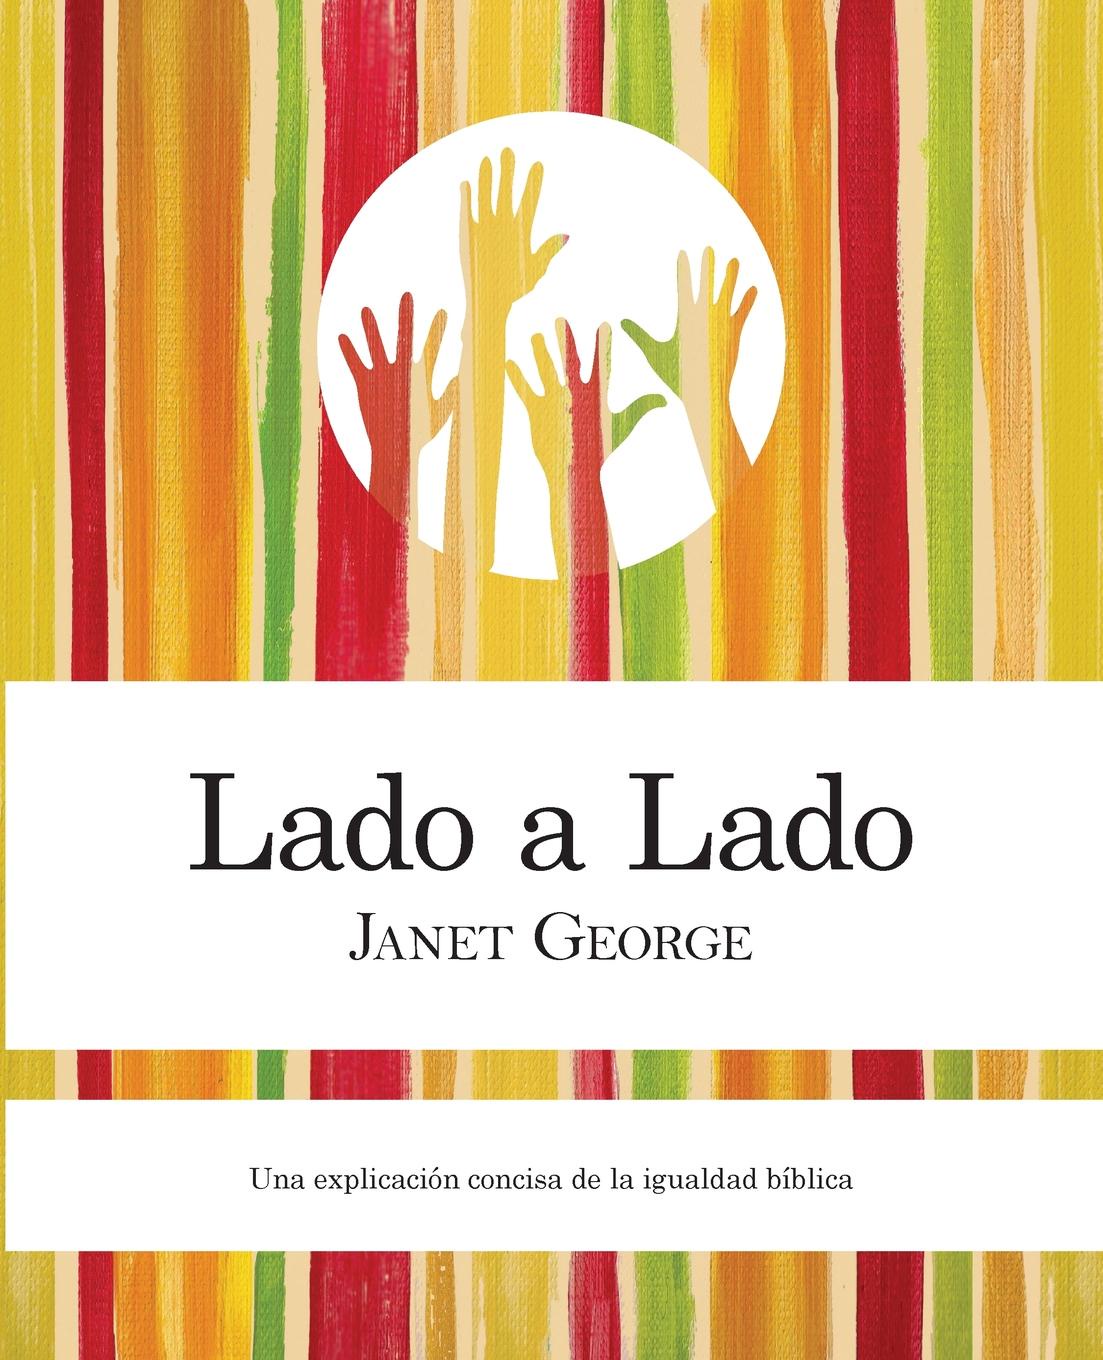 Janet George, Peace and Hope International Lado a Lado. Una Explicacion Concise de La Igualdad Biblica